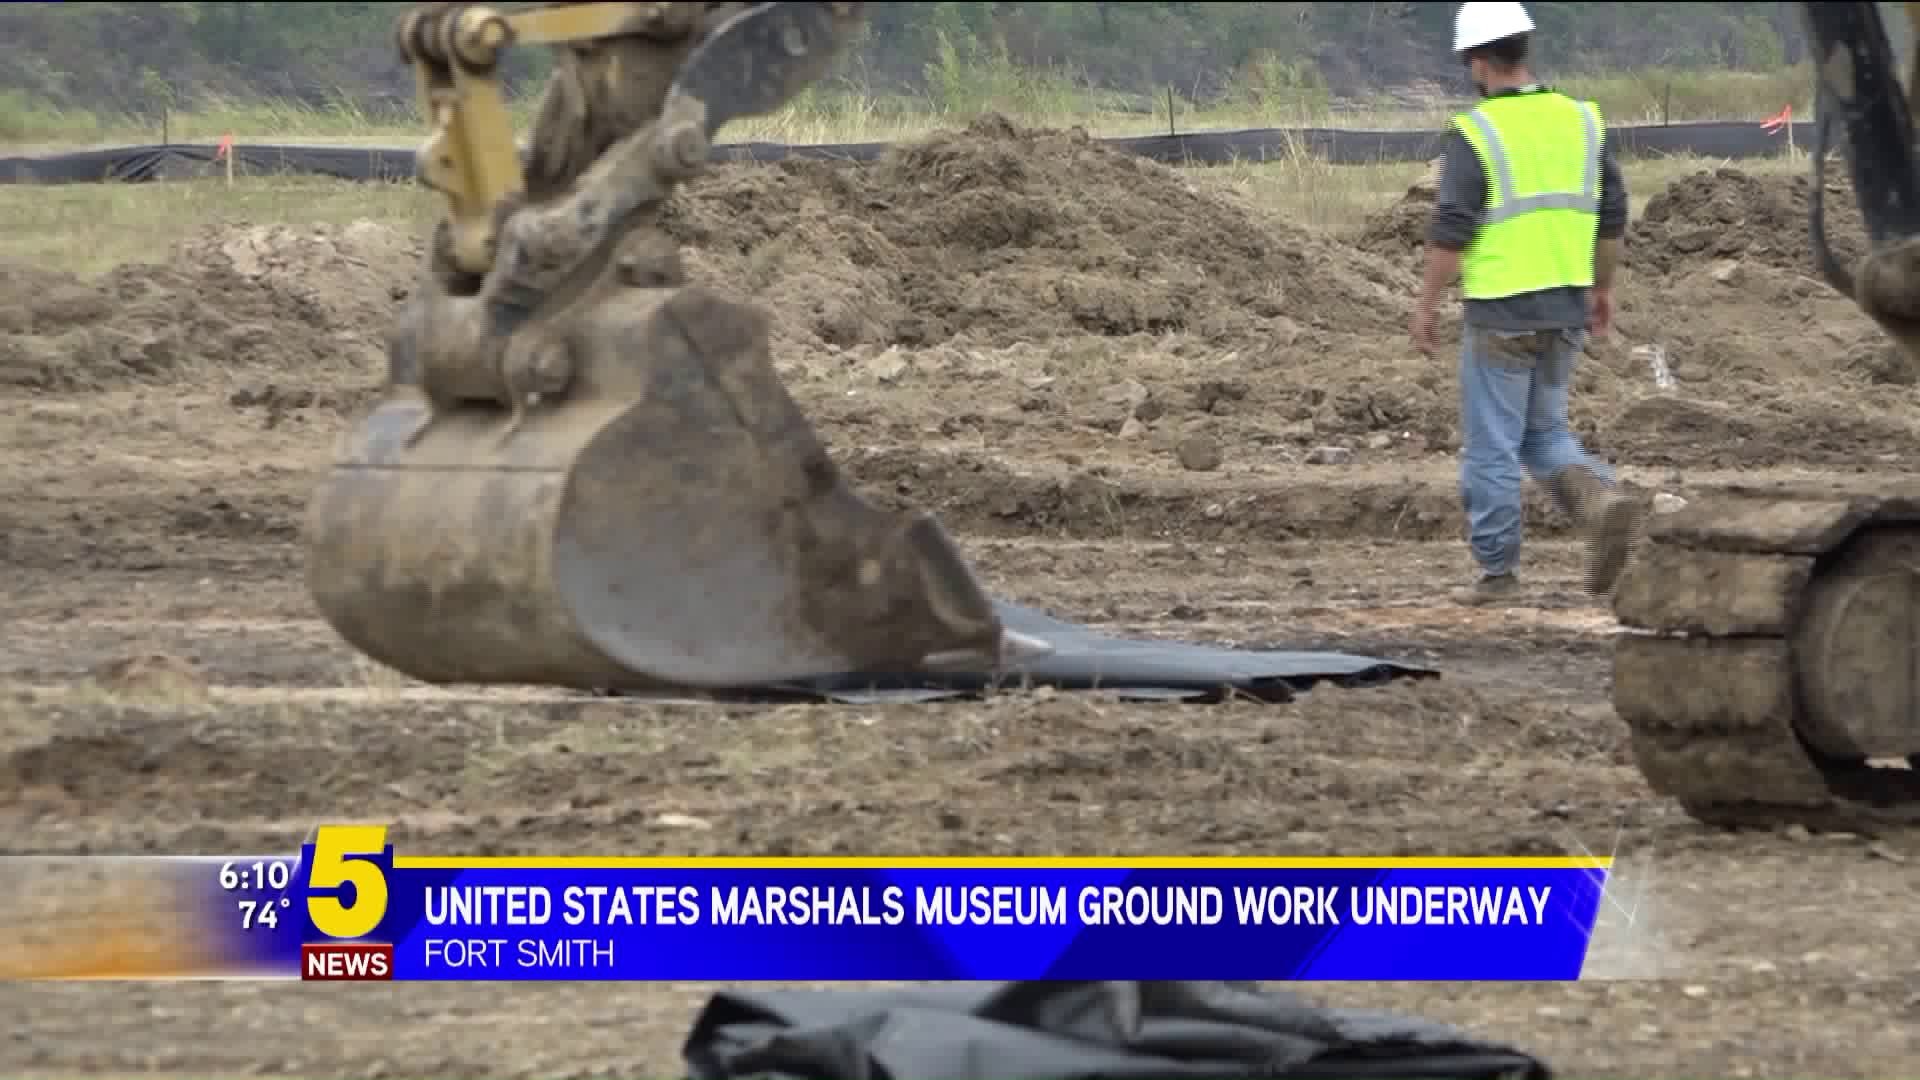 United States Marshals Musuem Groundwork Underway